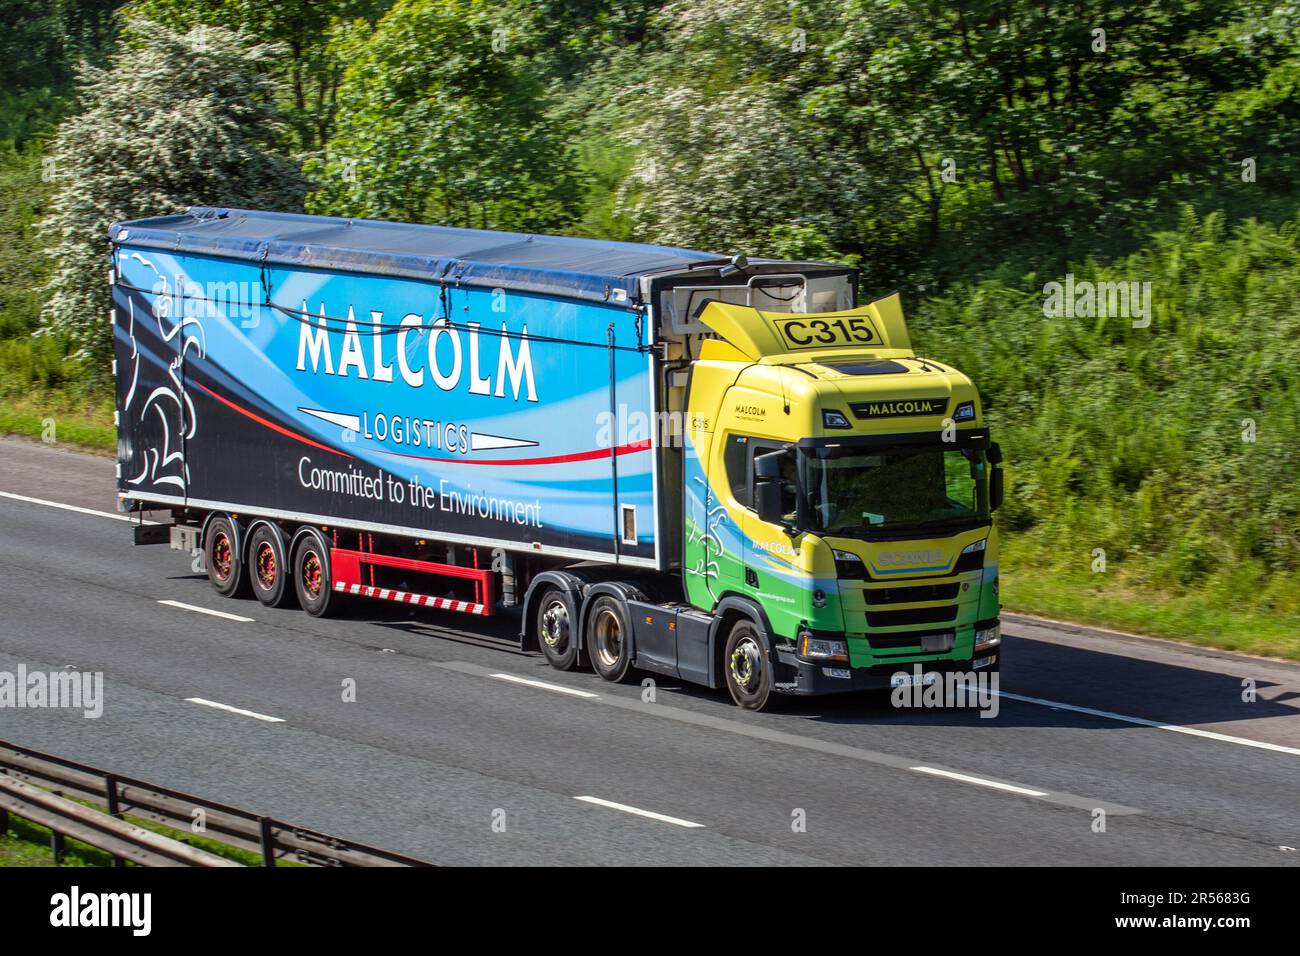 Malcom Logistics transport L768 camions de livraison, camion, transport, camion, transporteur de fret, Scania R450 véhicule, industrie européenne du transport commercial HGV, M6 à Manchester, Royaume-Uni Banque D'Images